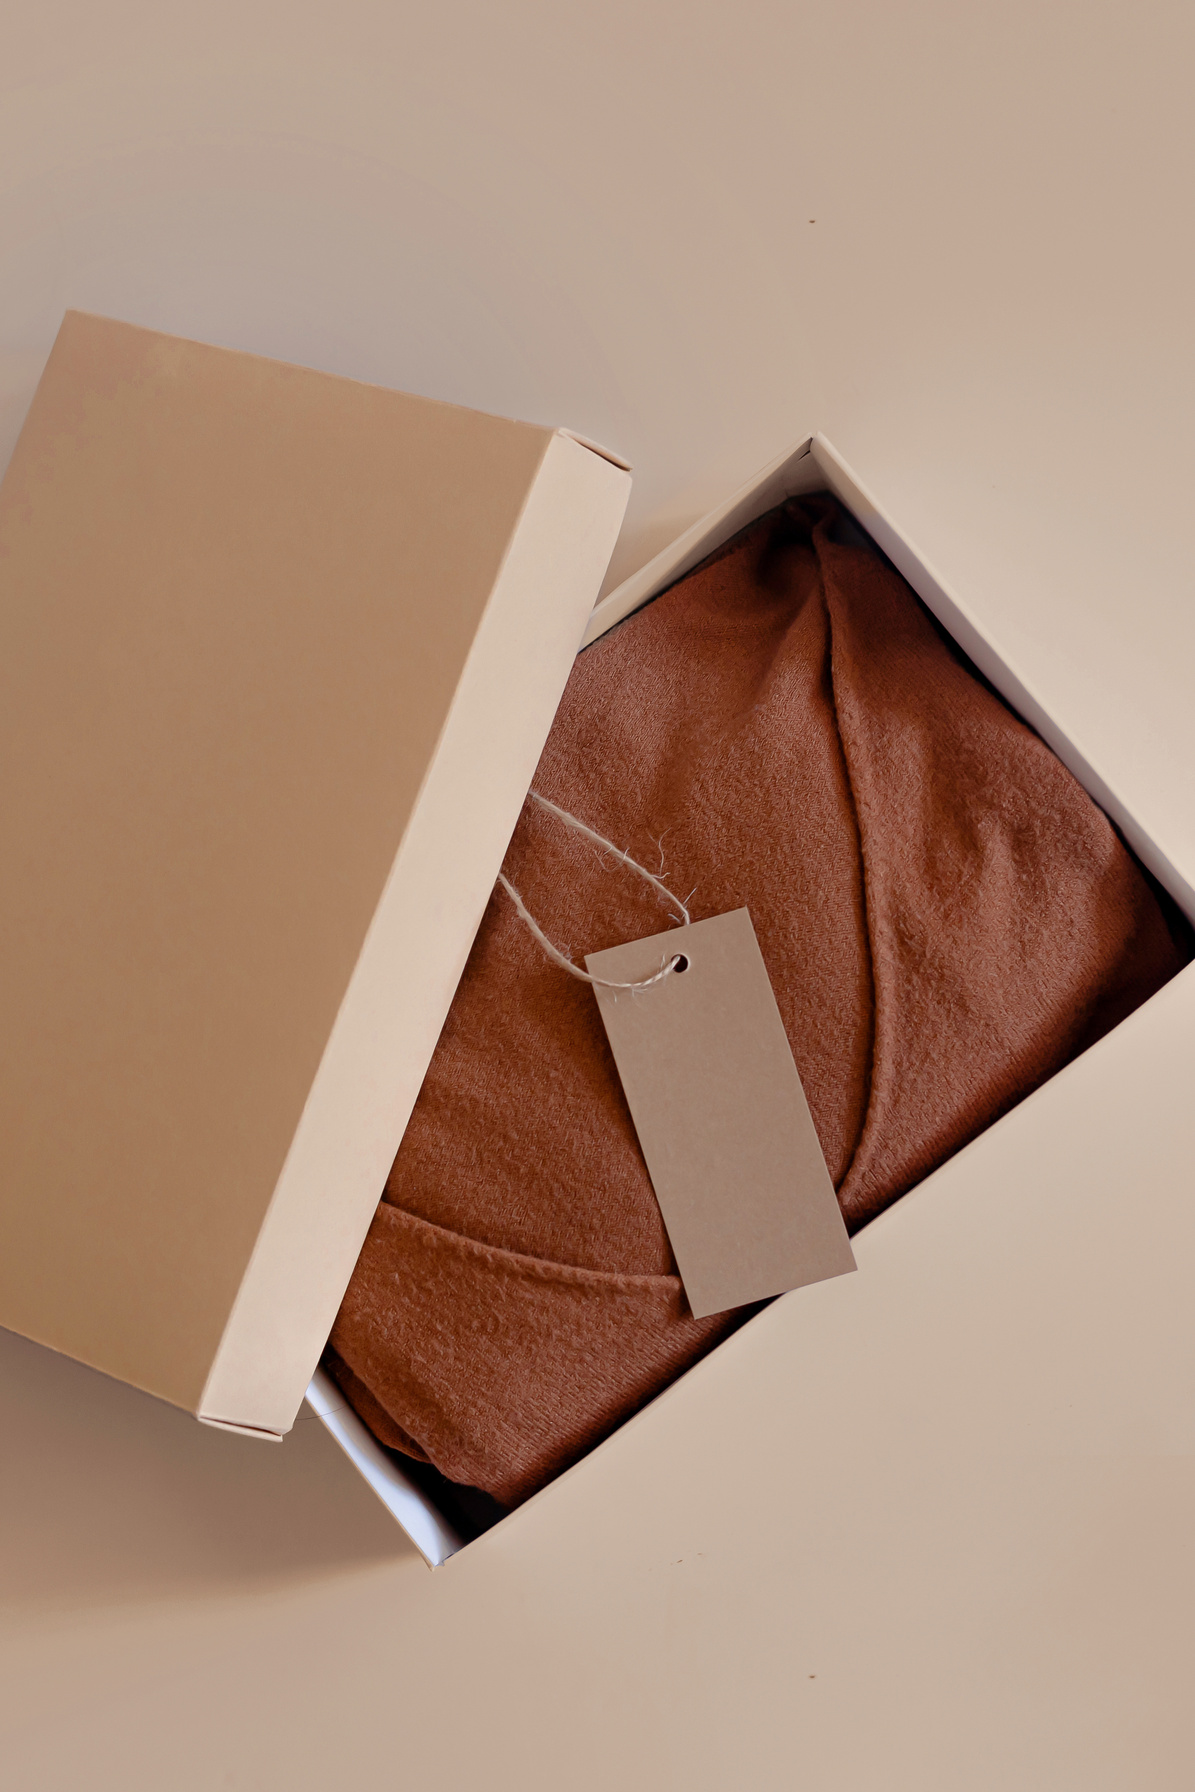 Folded Shirt in Cardboard Box